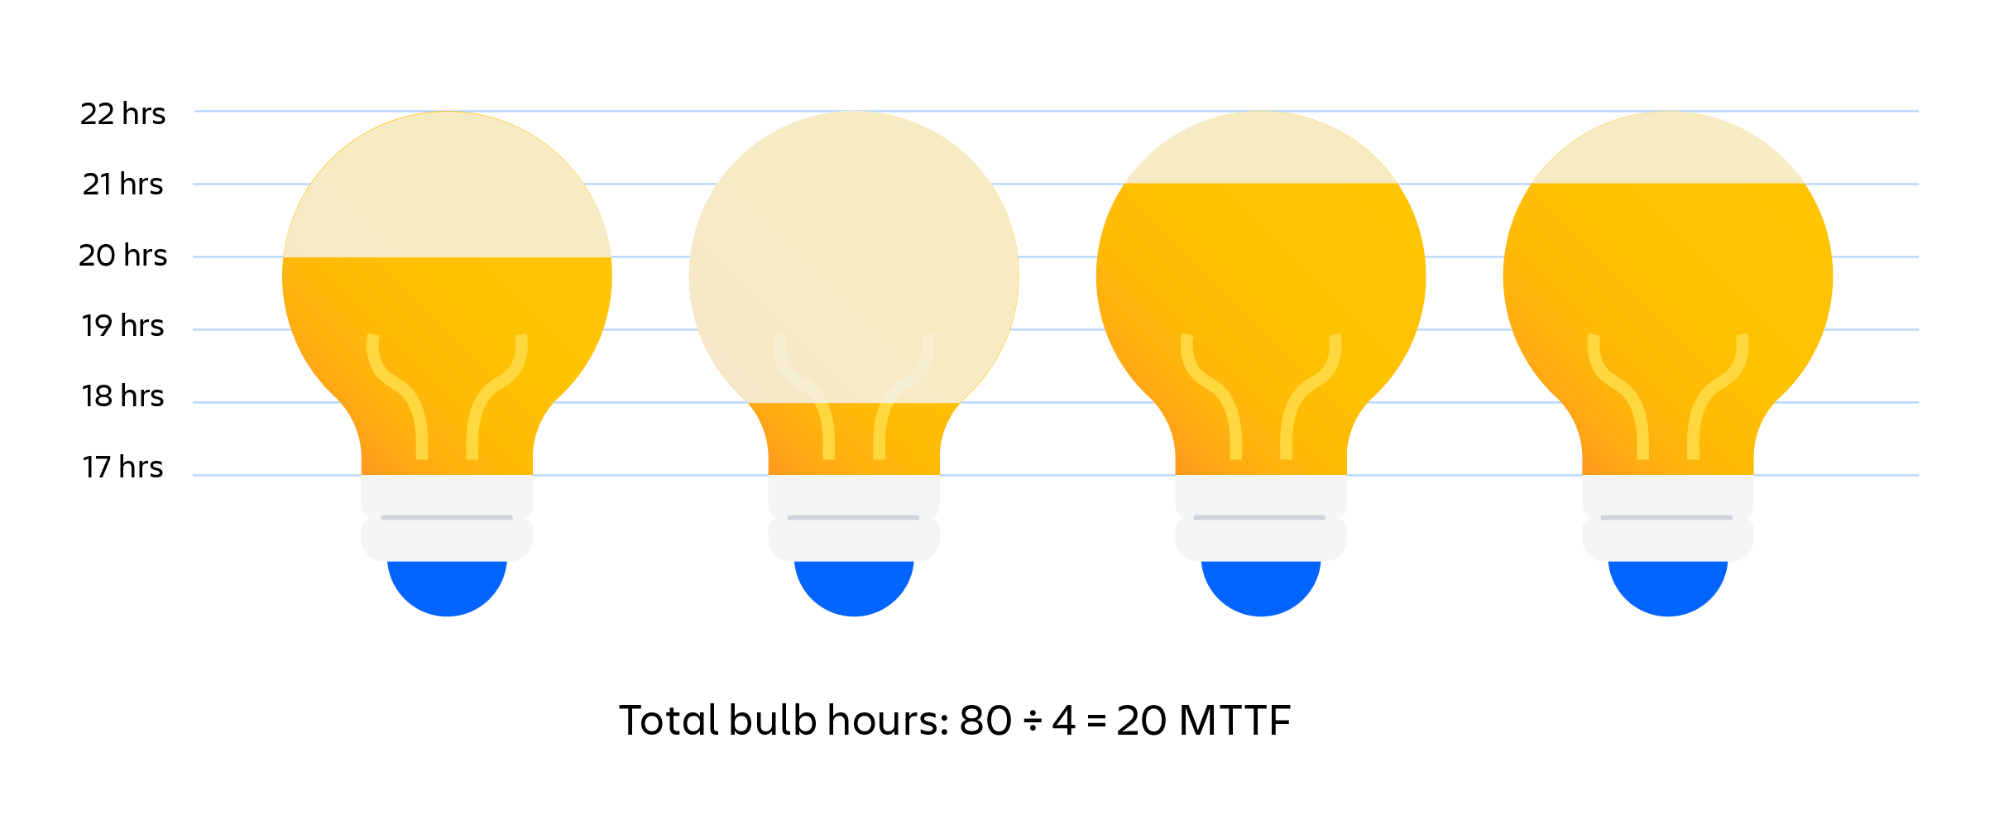 Визуальный пример выяснения MTTF лампочек. Общая сумма часов работы лампочек до перегорания, деленная на количество лампочек, равняется MTTF (средней наработке до отказа)